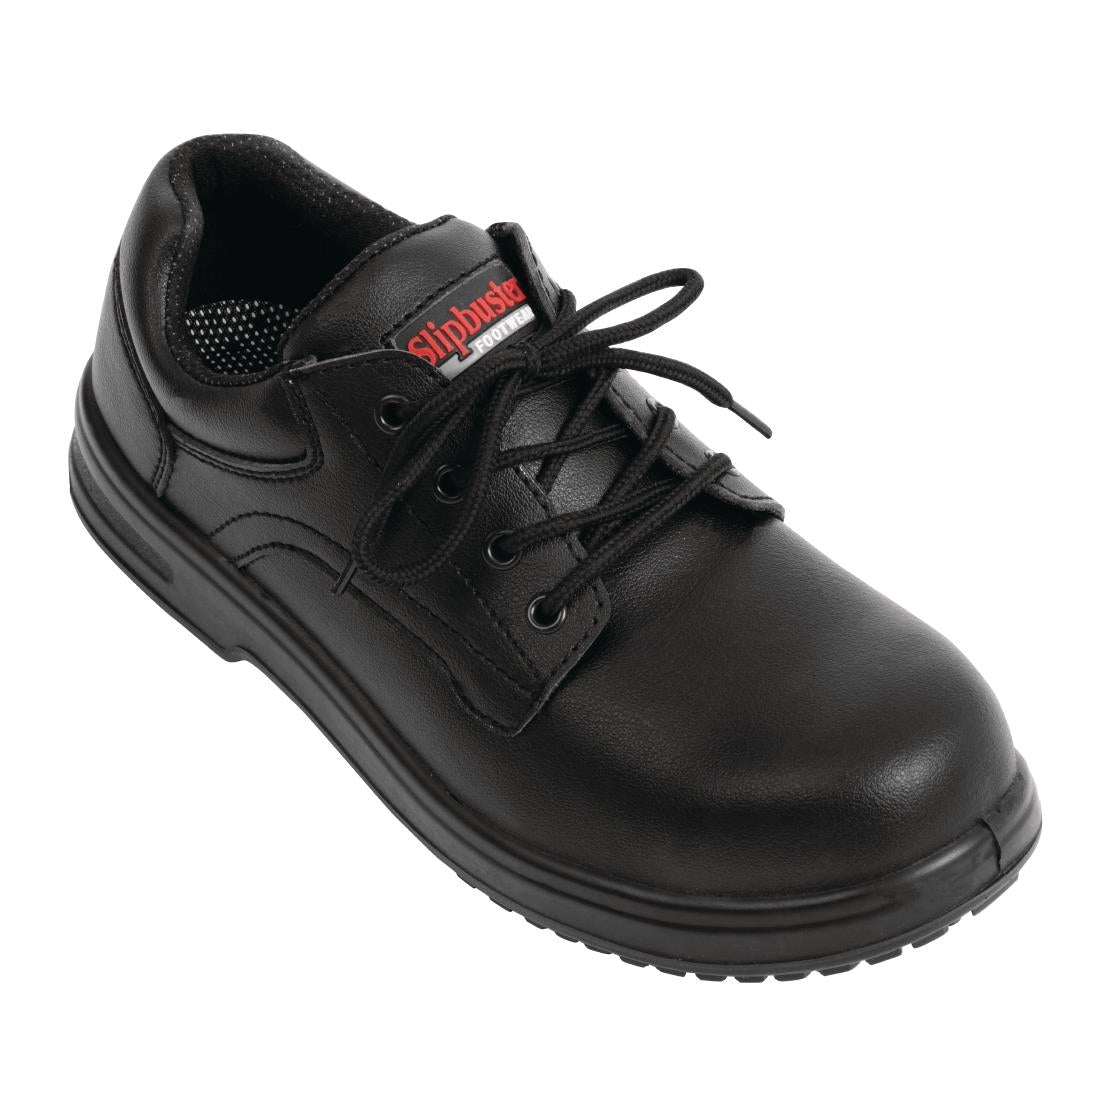 BB498-39 Slipbuster Basic Shoes Slip Resistant Black 39 JD Catering Equipment Solutions Ltd